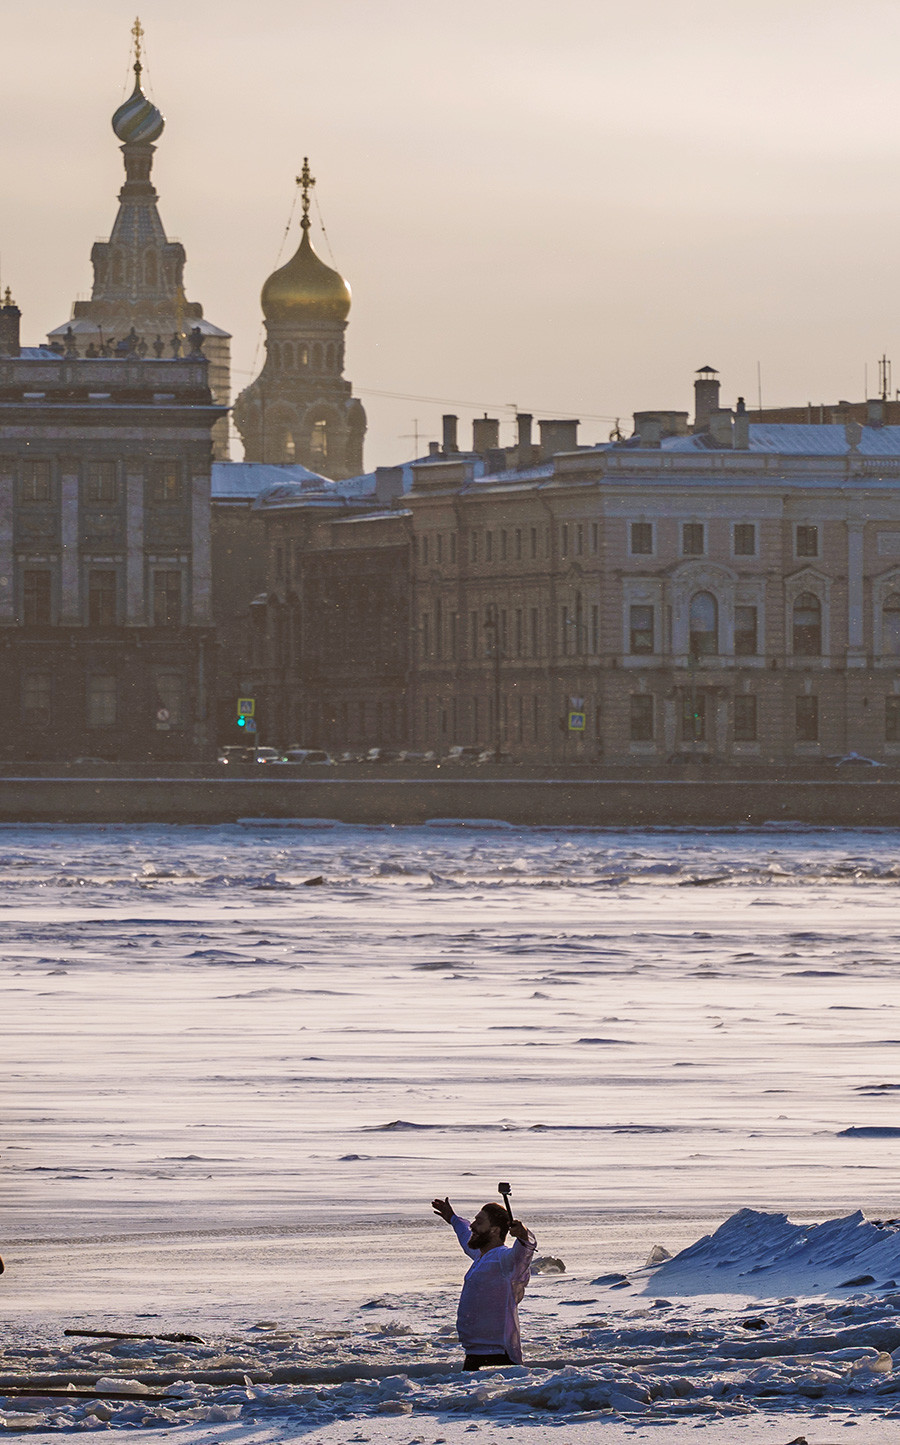 Un homme plonge dans l'eau au centre de Saint-Pétersbourg.

